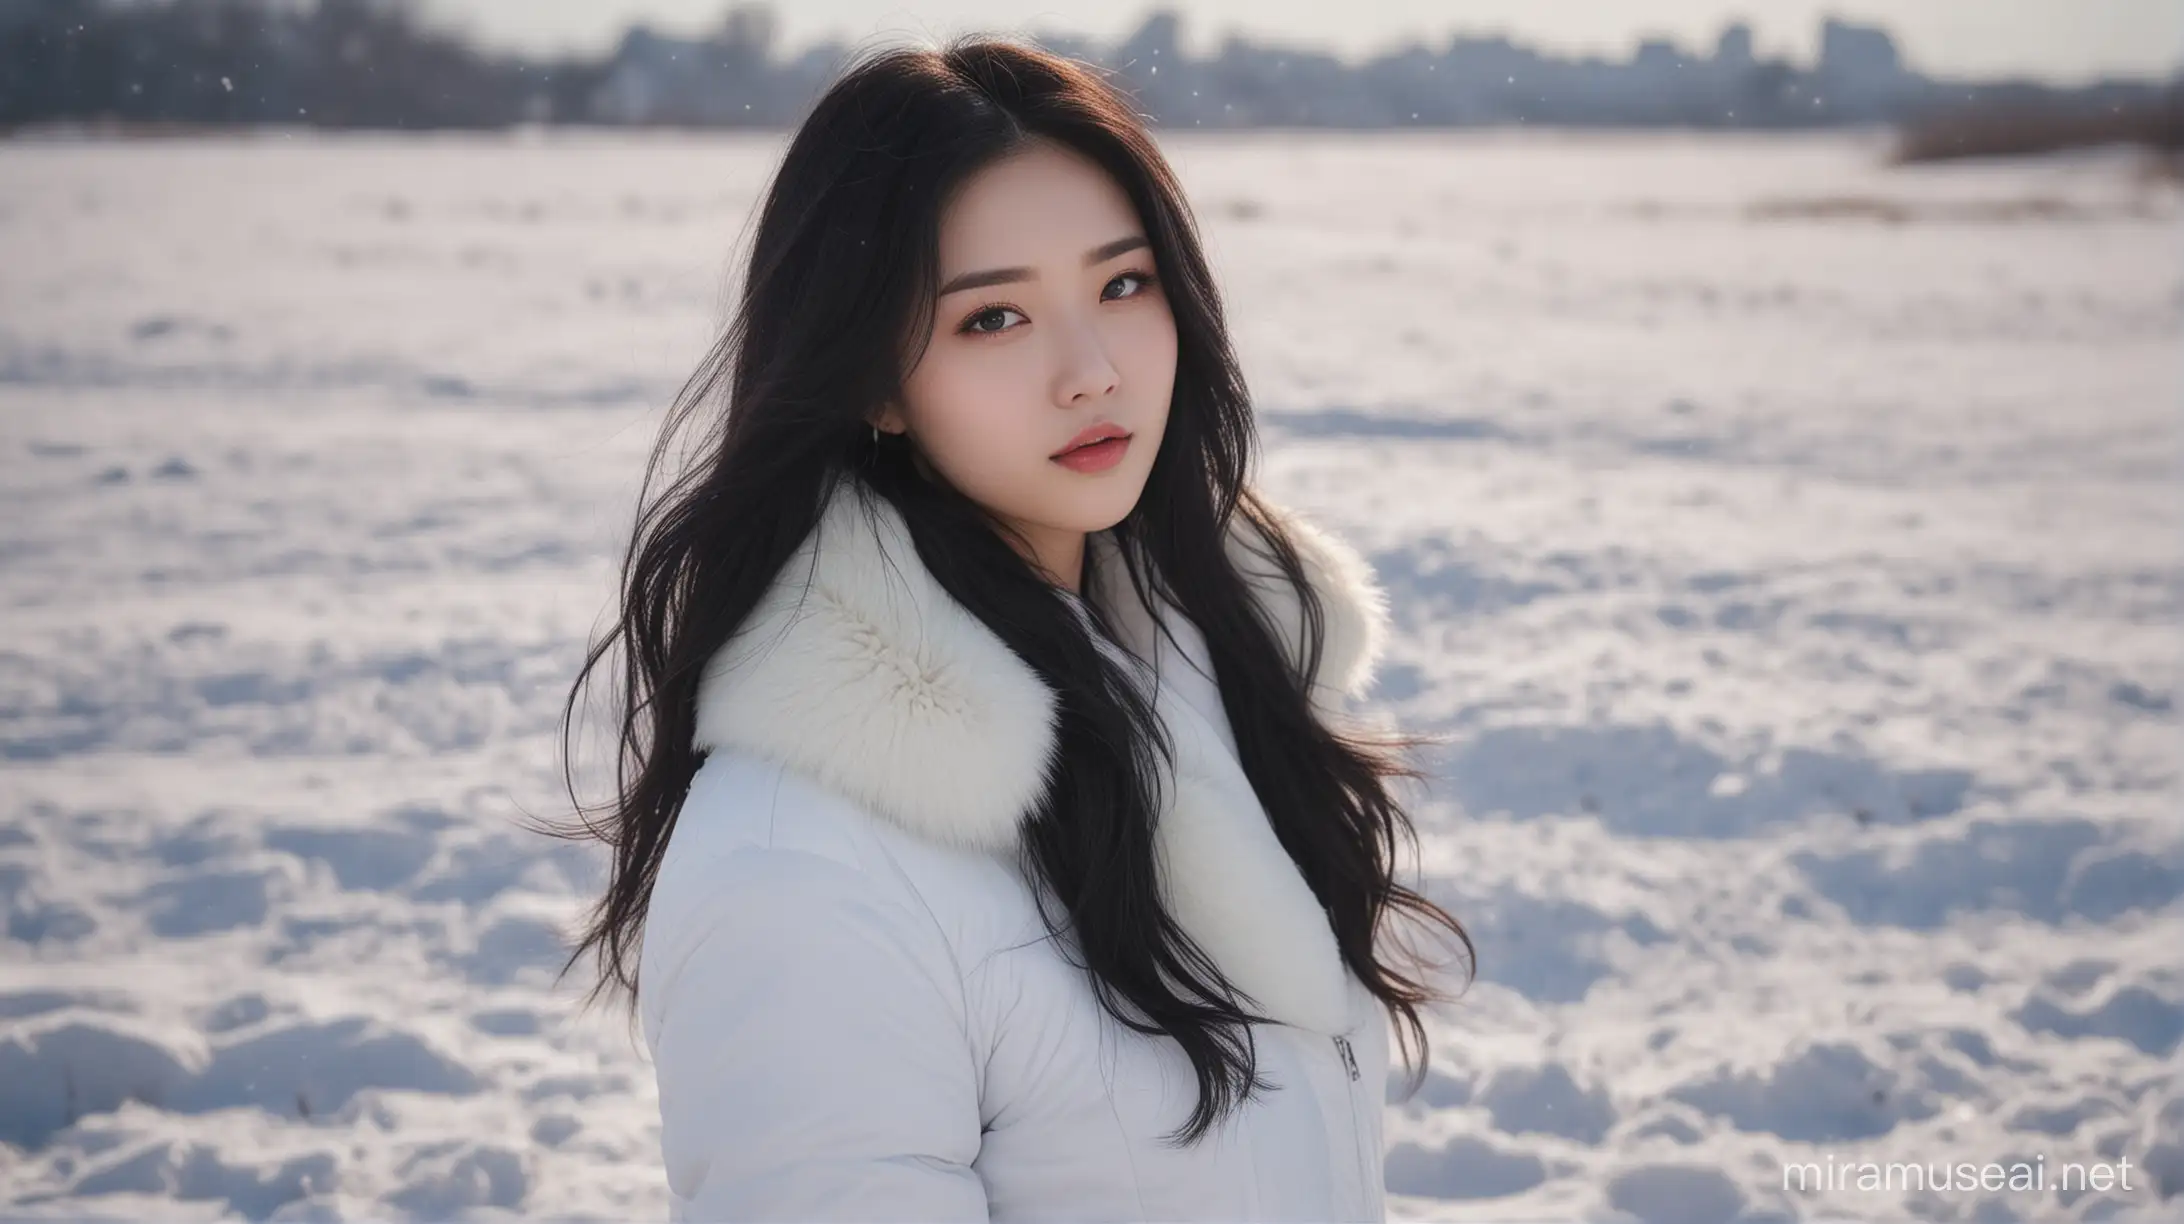 Elegant Woman in Snowy Winter Landscape